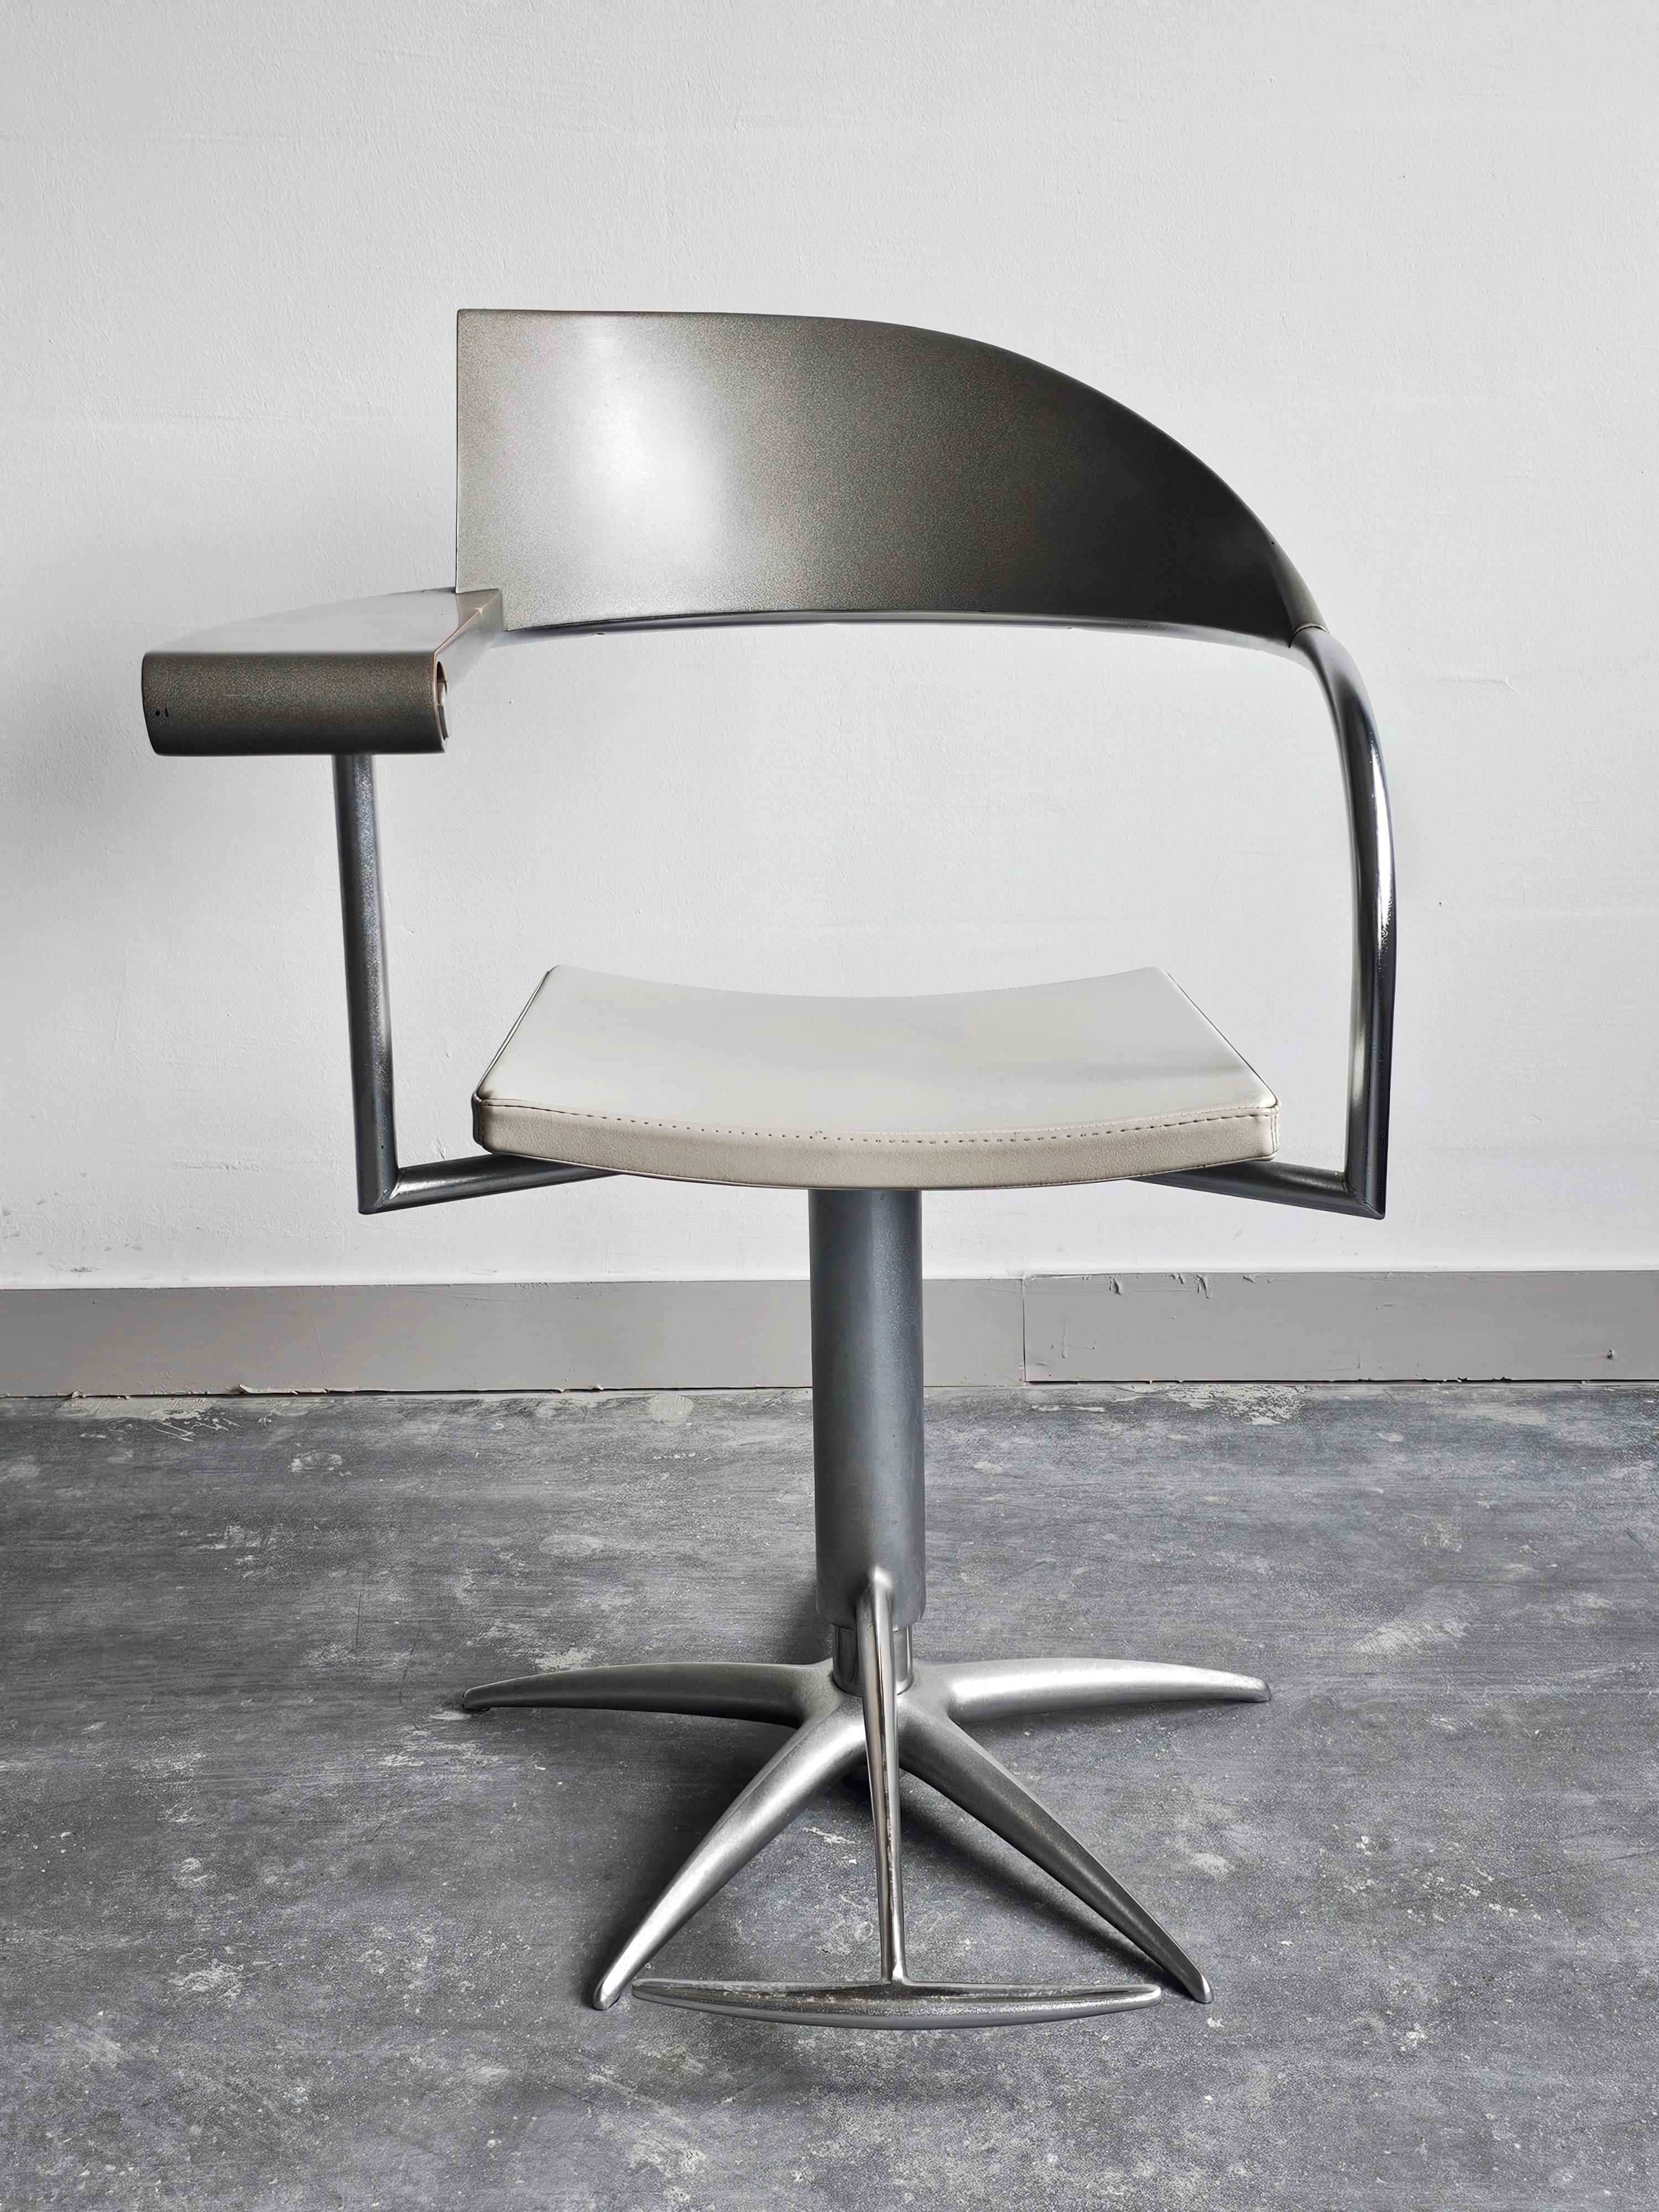 In diesem Angebot finden Sie 4 außergewöhnlich seltene drehbare Barbierstühle, die sogenannten Techno-Stühle, entworfen von Philippe Starck für L'Oreal.

Diese Stühle repräsentieren die Spitze des postmodernen Designs mit erstaunlichen Linien und